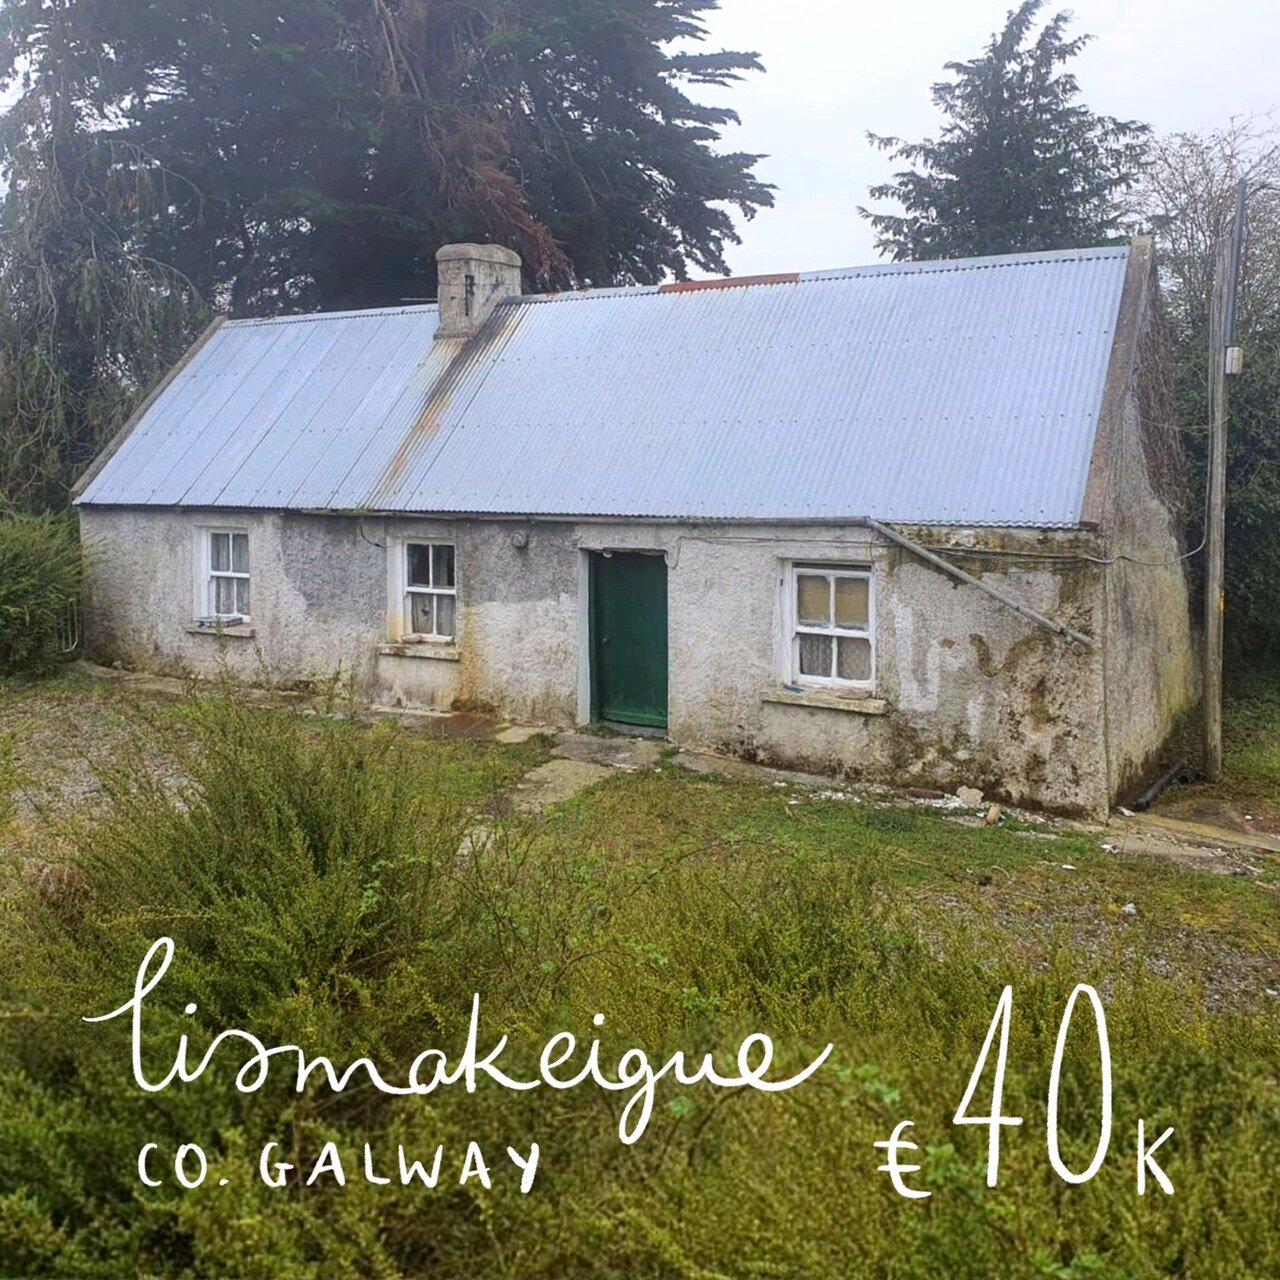 Lismakeigue, Ballinasloe, Co. Galway. €40k